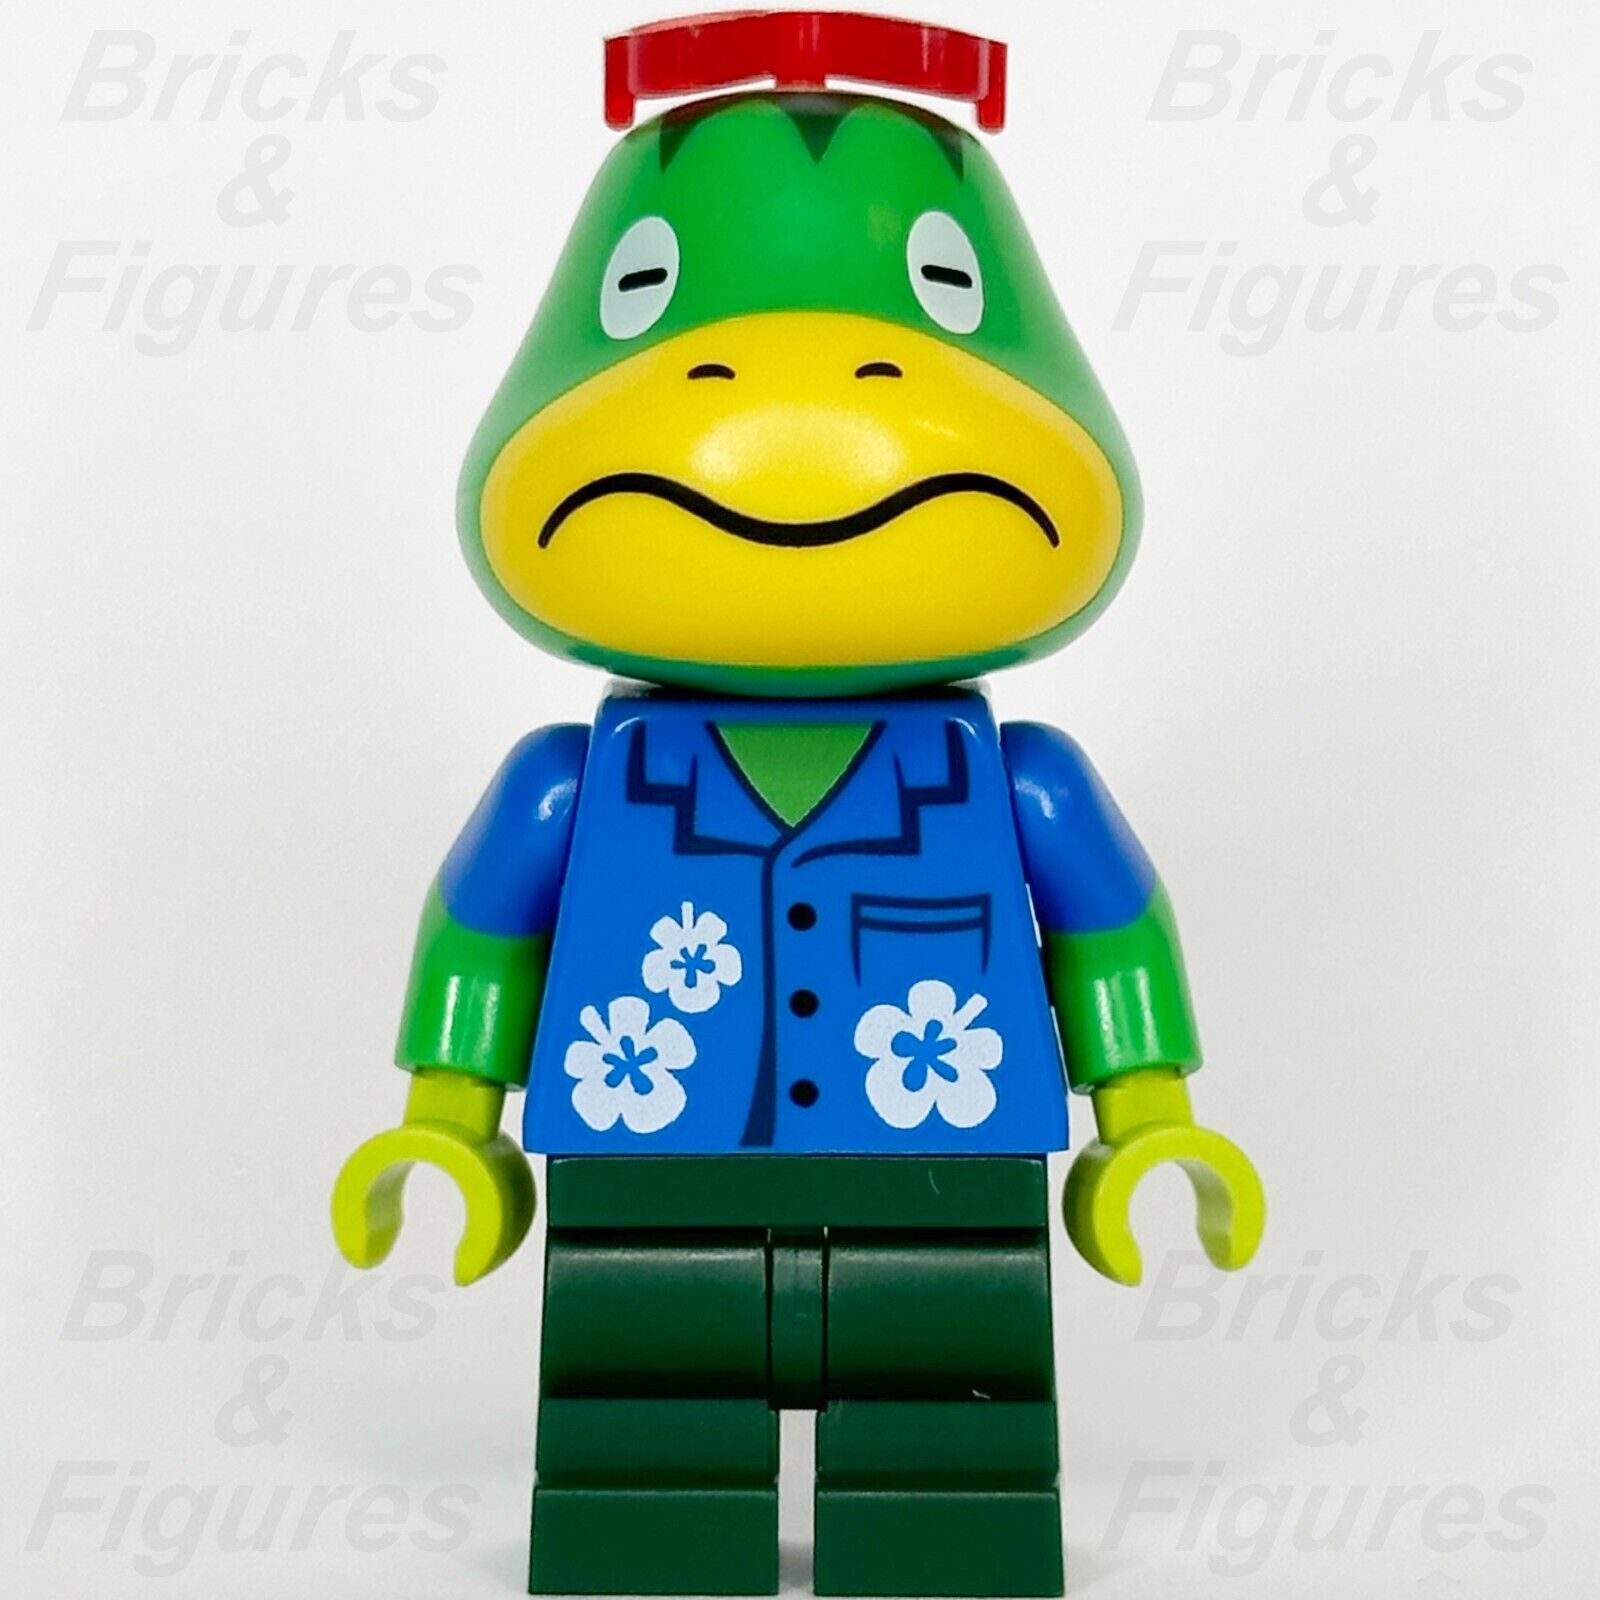 LEGO Animal Crossing Kapp'n Minifigure Turtle Minifig 77048 ani005 - Bricks & Figures